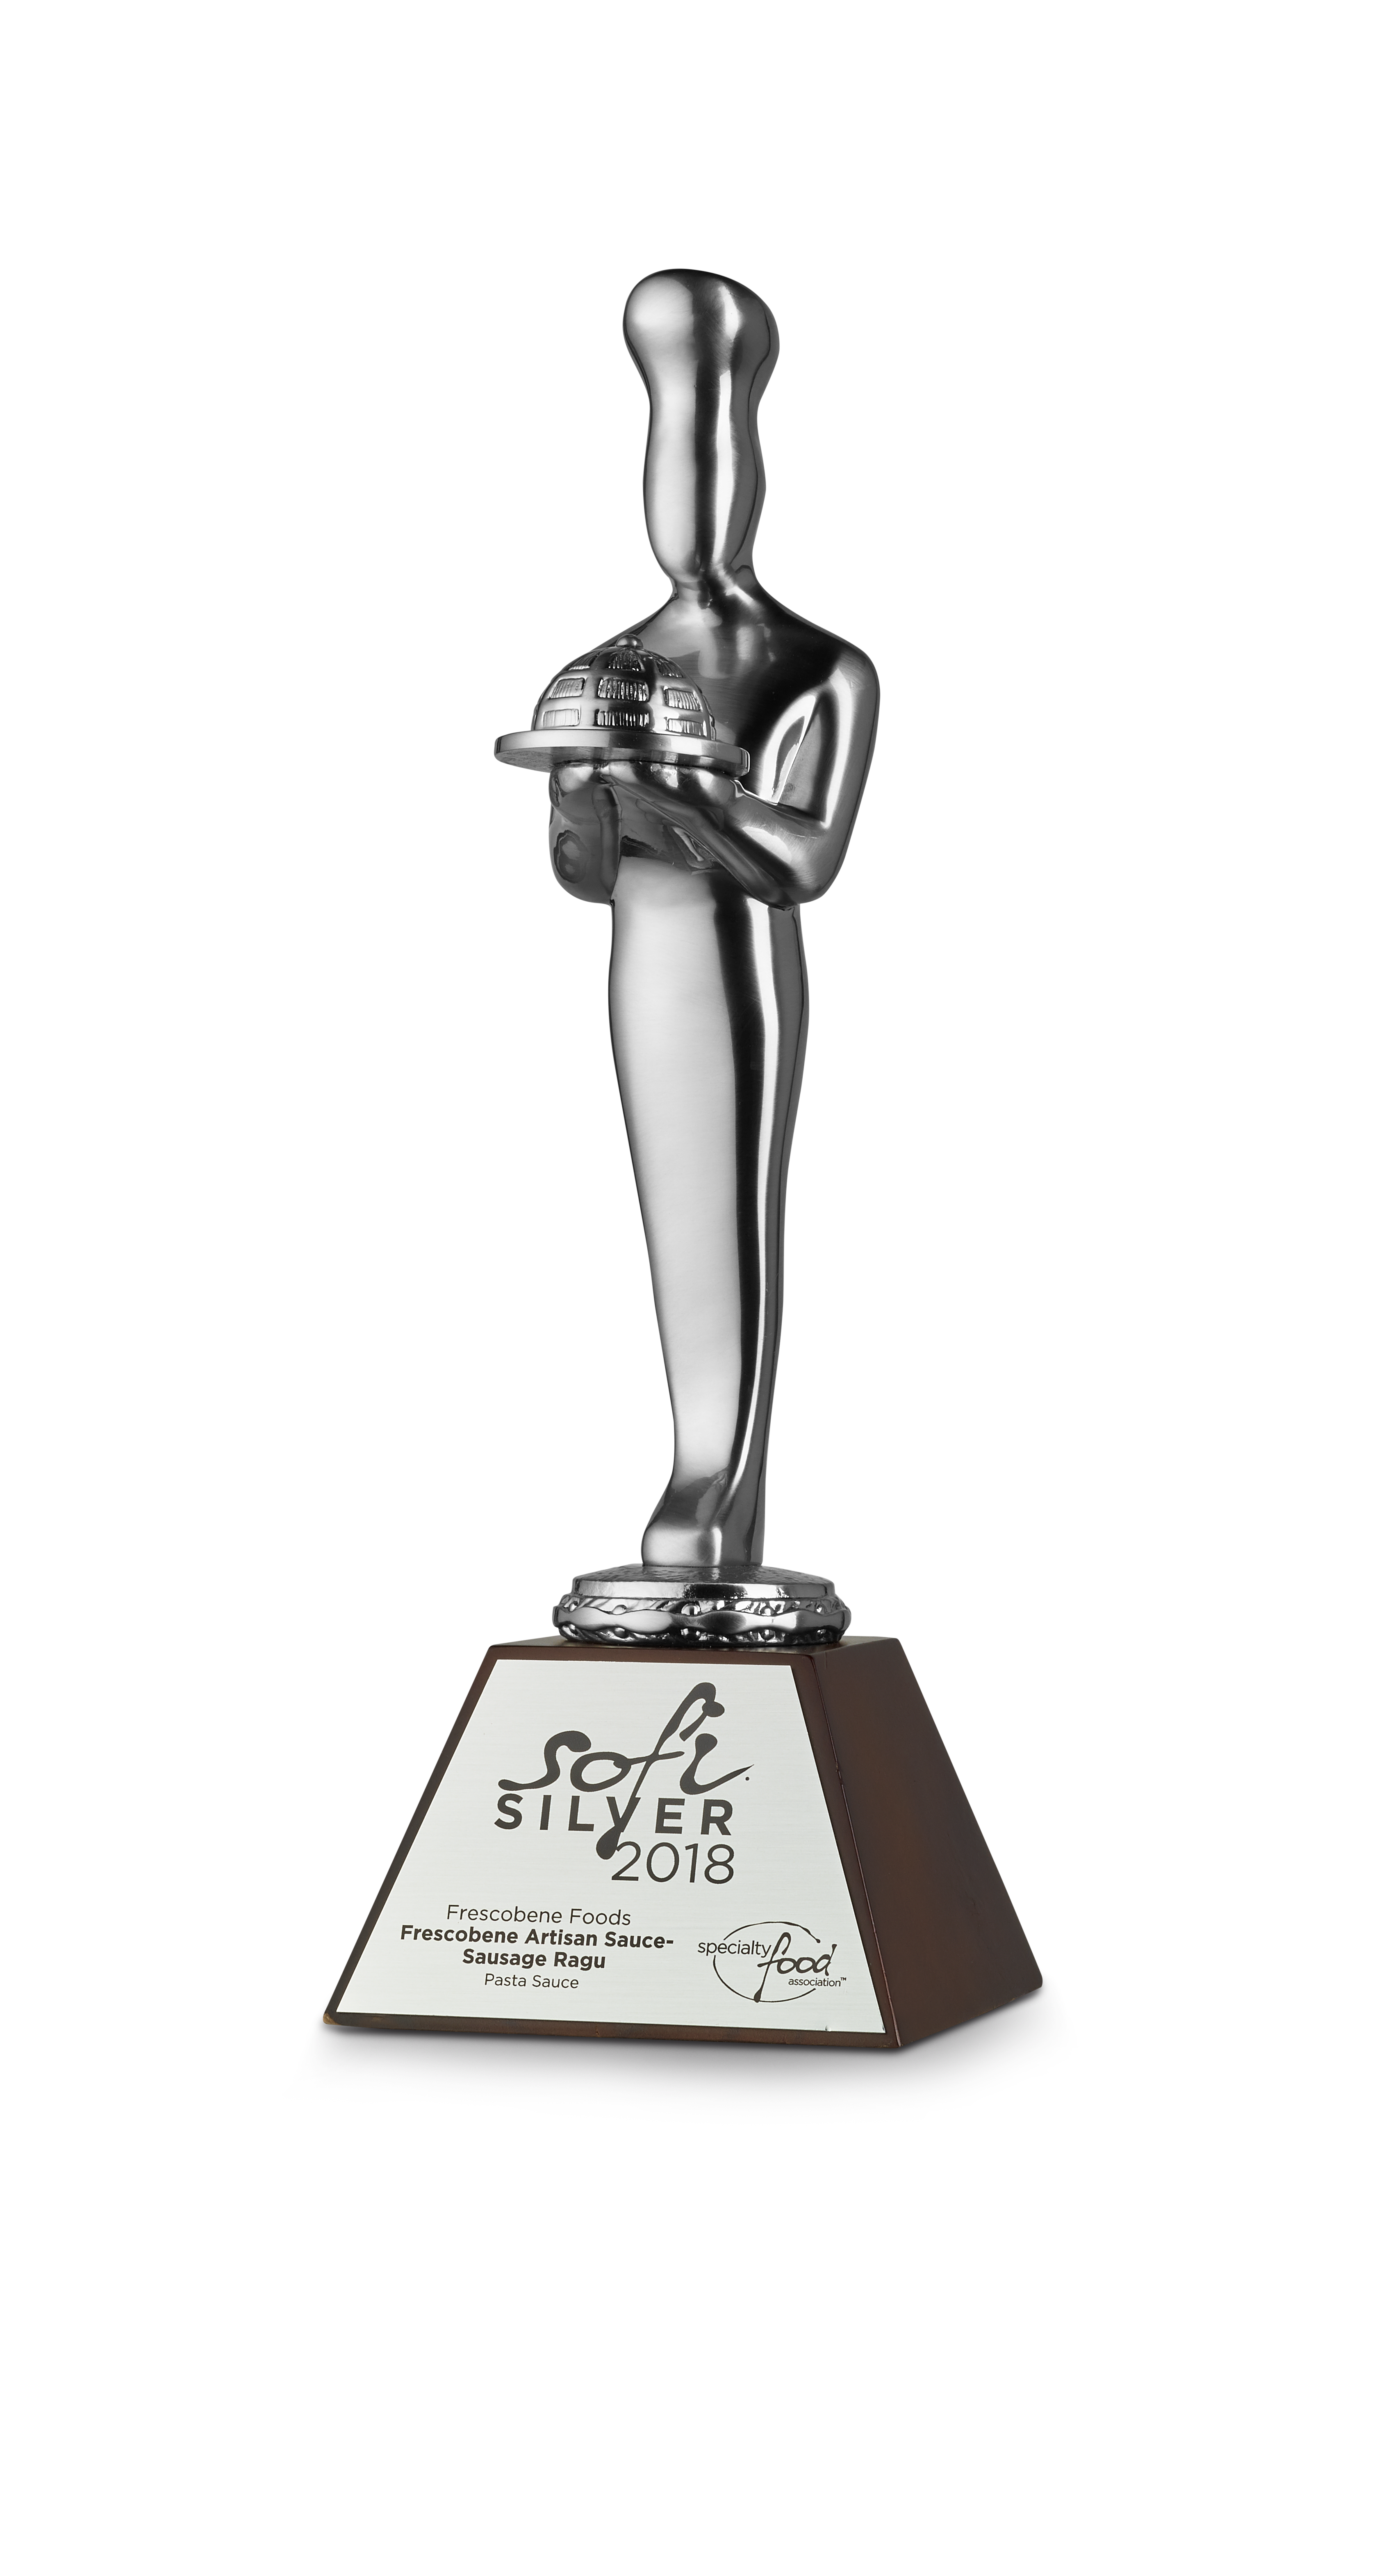 sofi award